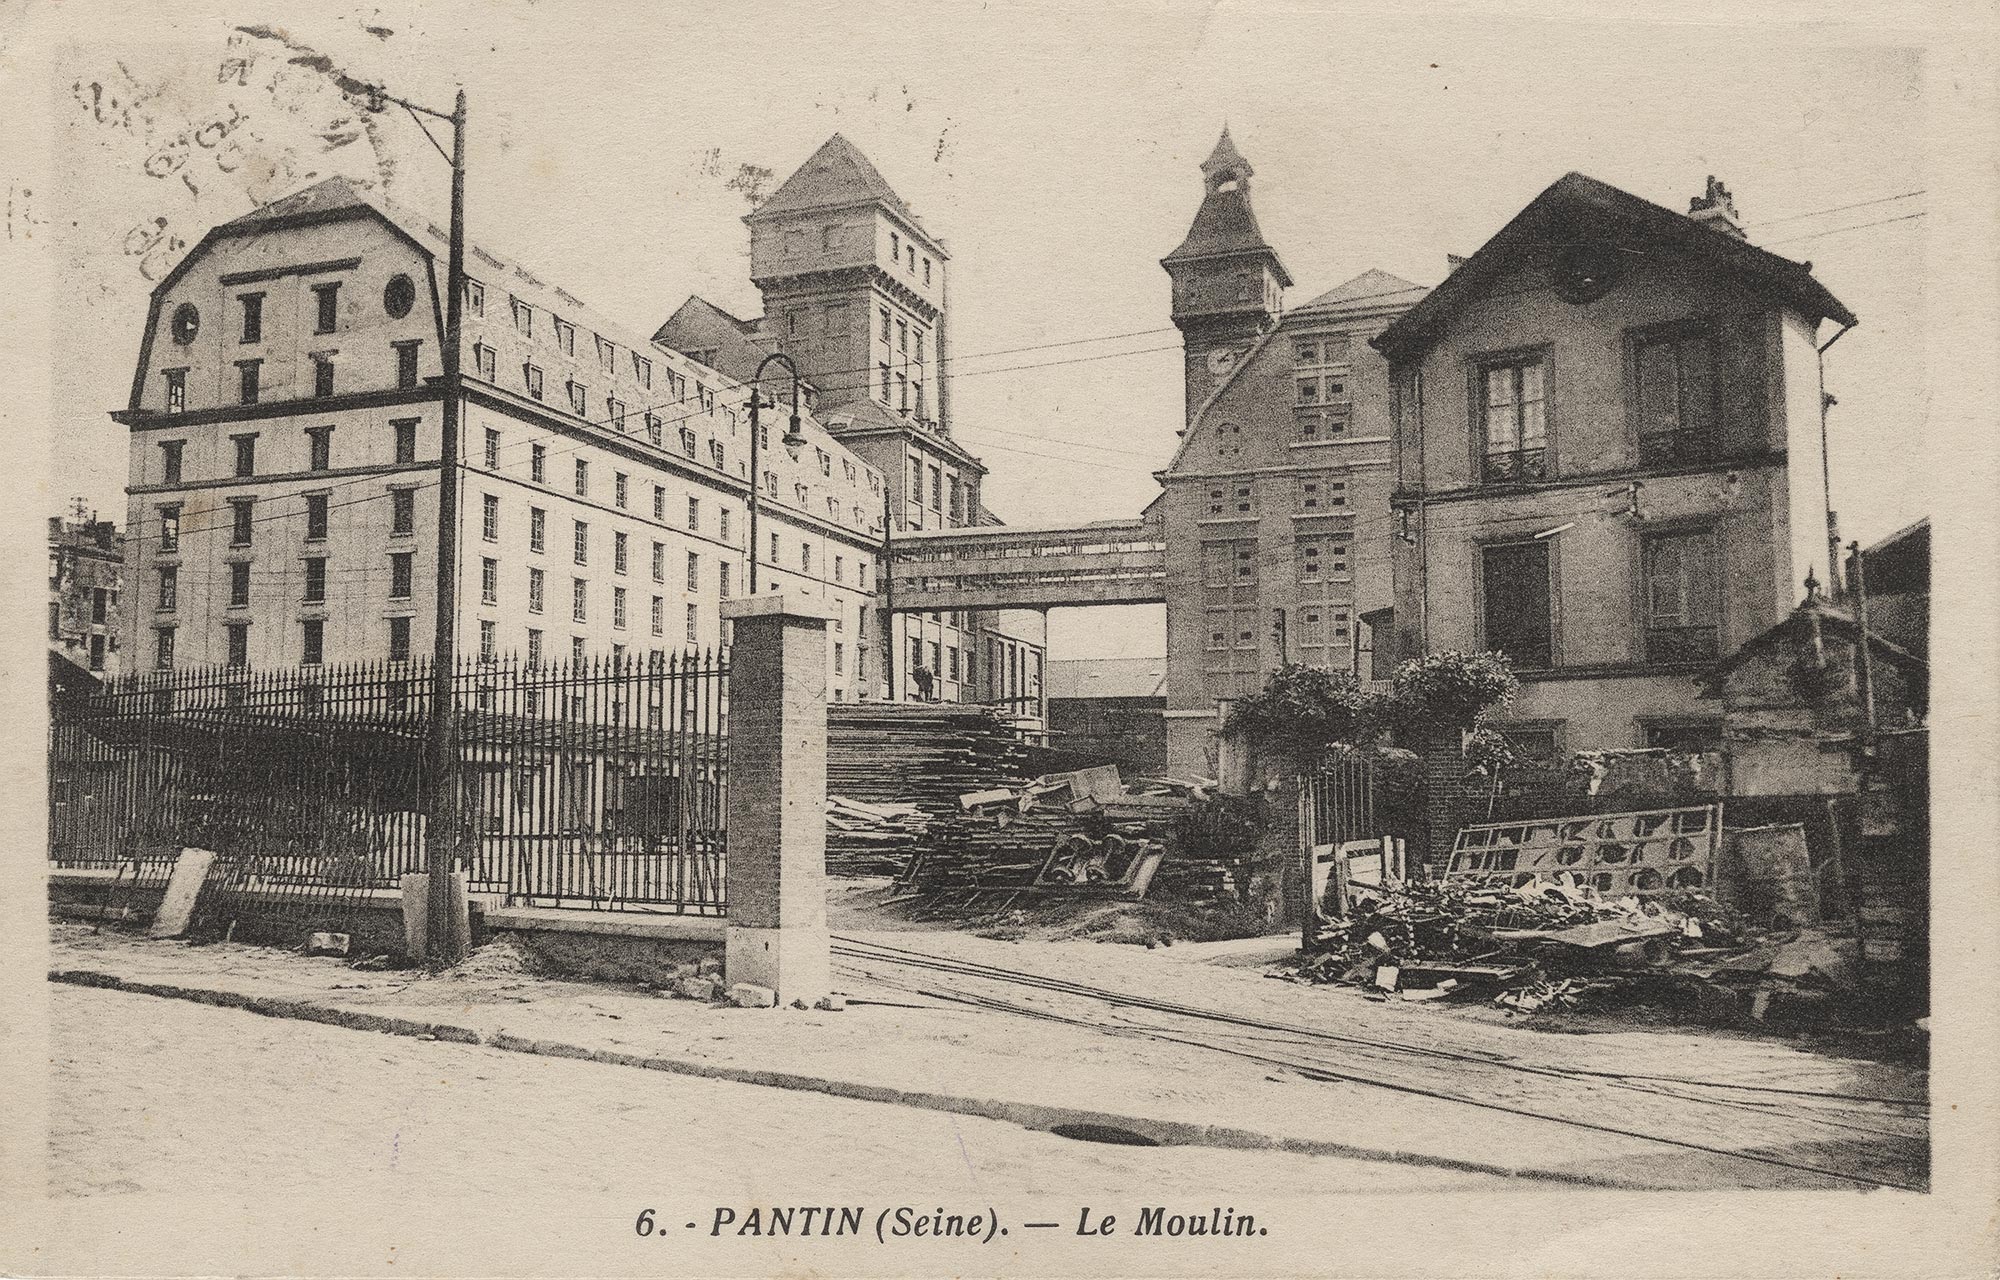 Les grands moulins de Pantin. Carte postale en noir et blanc. Archives Municipales de Pantin avec la référence 2FI/808. Sans date.